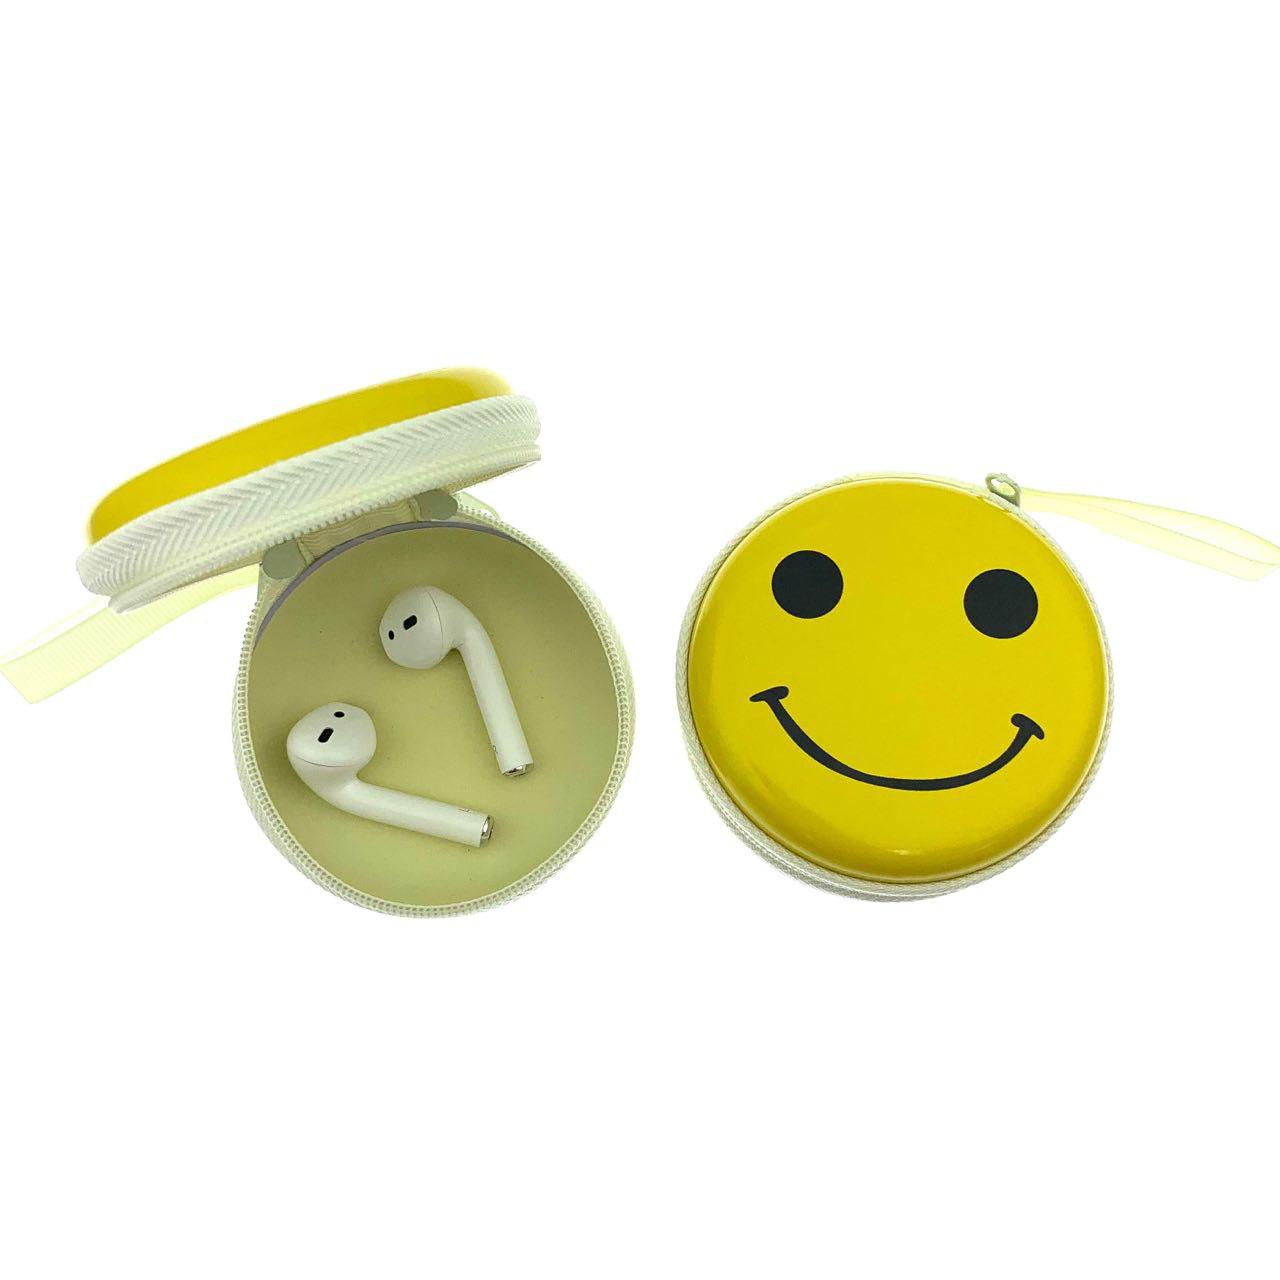 Футляр-кейс для хранения мелочи или наушников на замочке, основа металл, рисунок Смайлик Slightly Smiling Face.